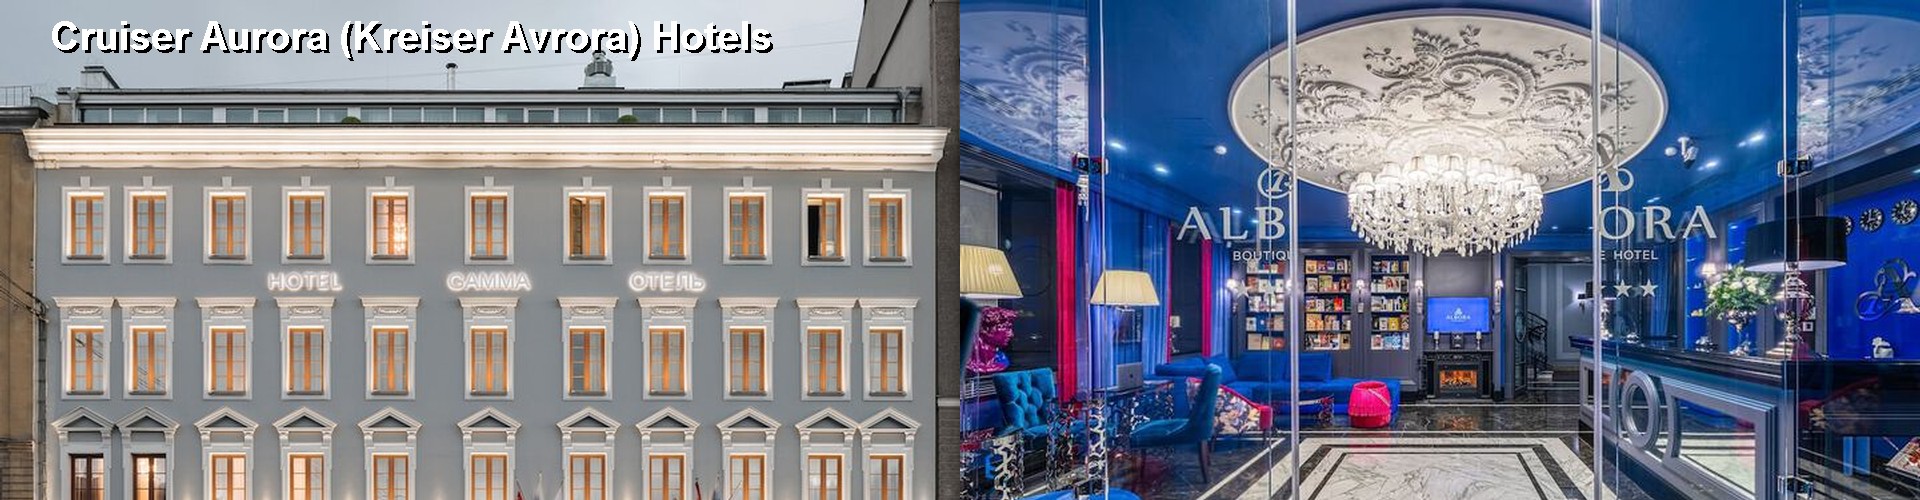 5 Best Hotels near Cruiser Aurora (Kreiser Avrora)